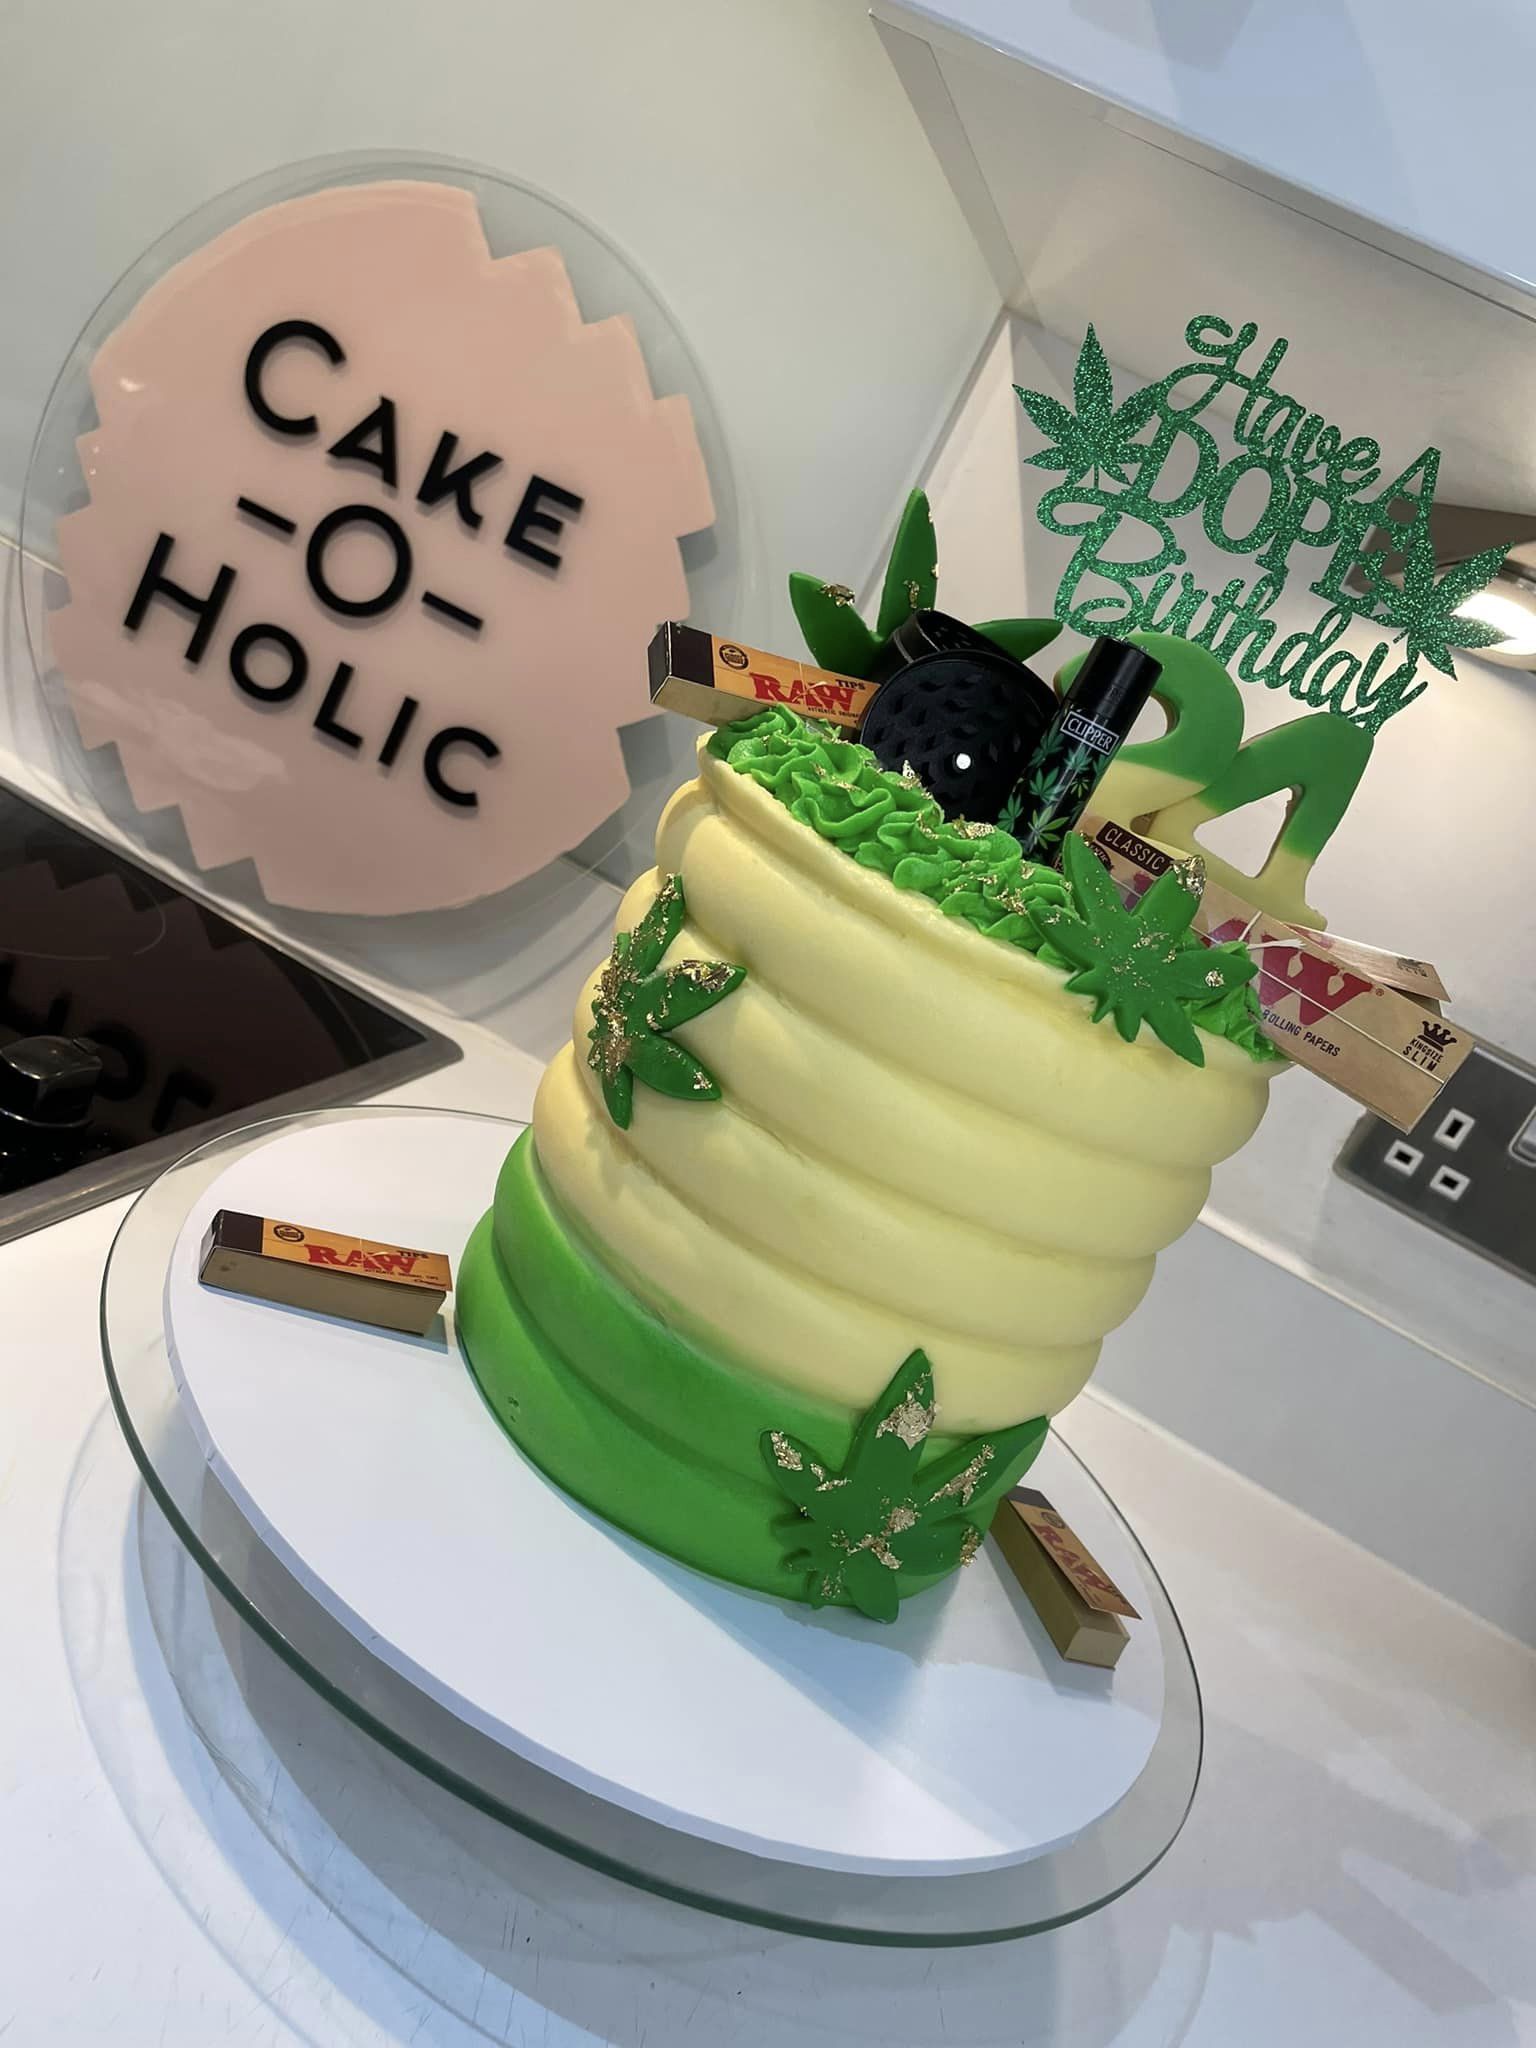 Cake-o-holic - Cakenest